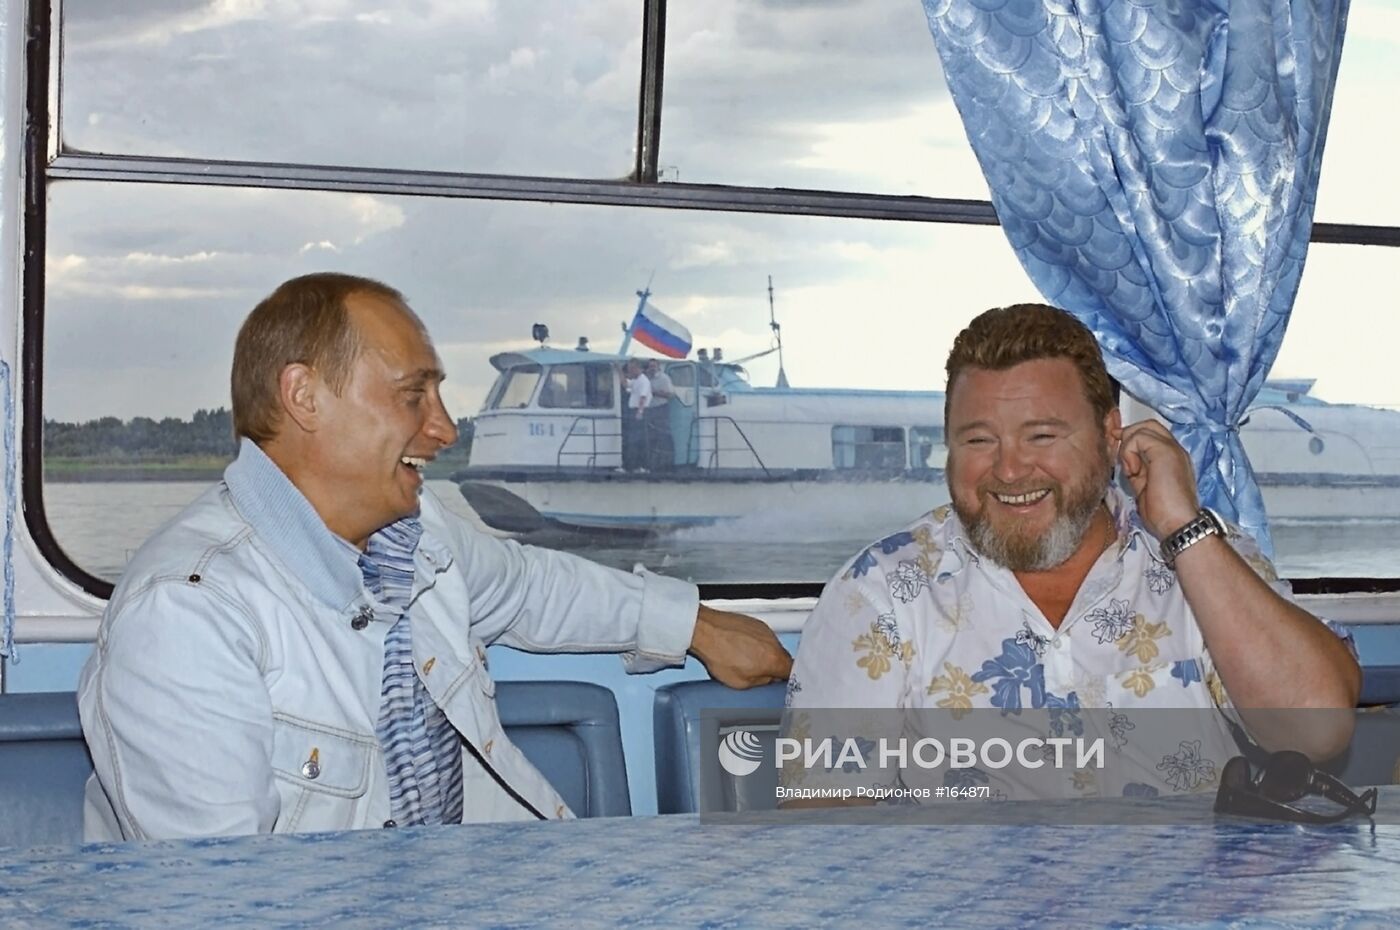 В.Путин и М.Евдокимов во время прогулки на катере по реке Катунь